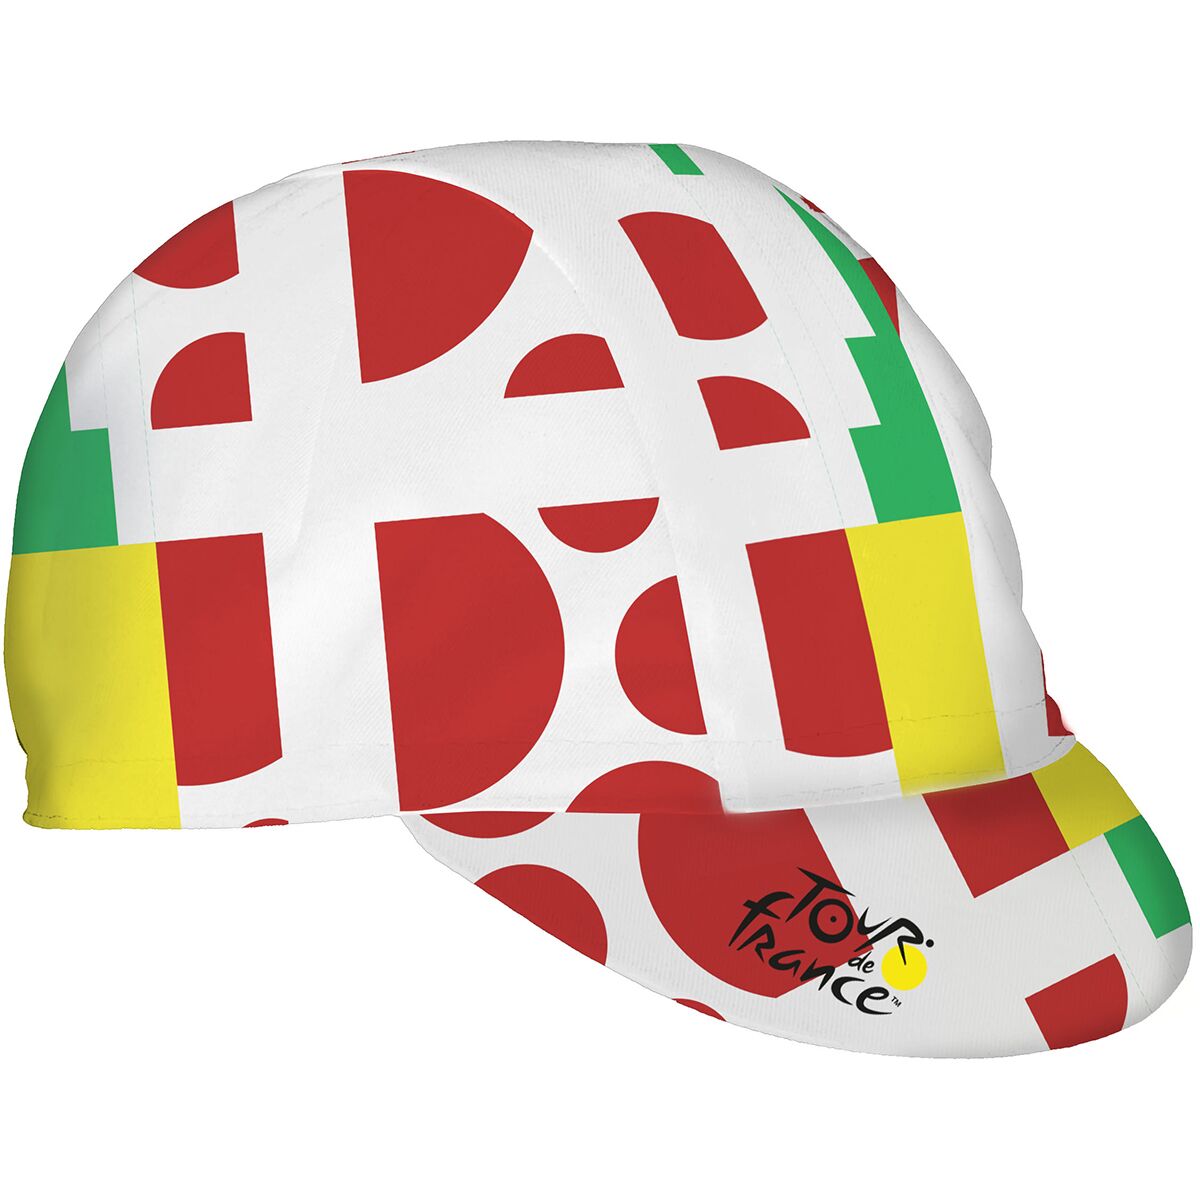 Santini Tour de France Official Copenhagen Cycling Cap